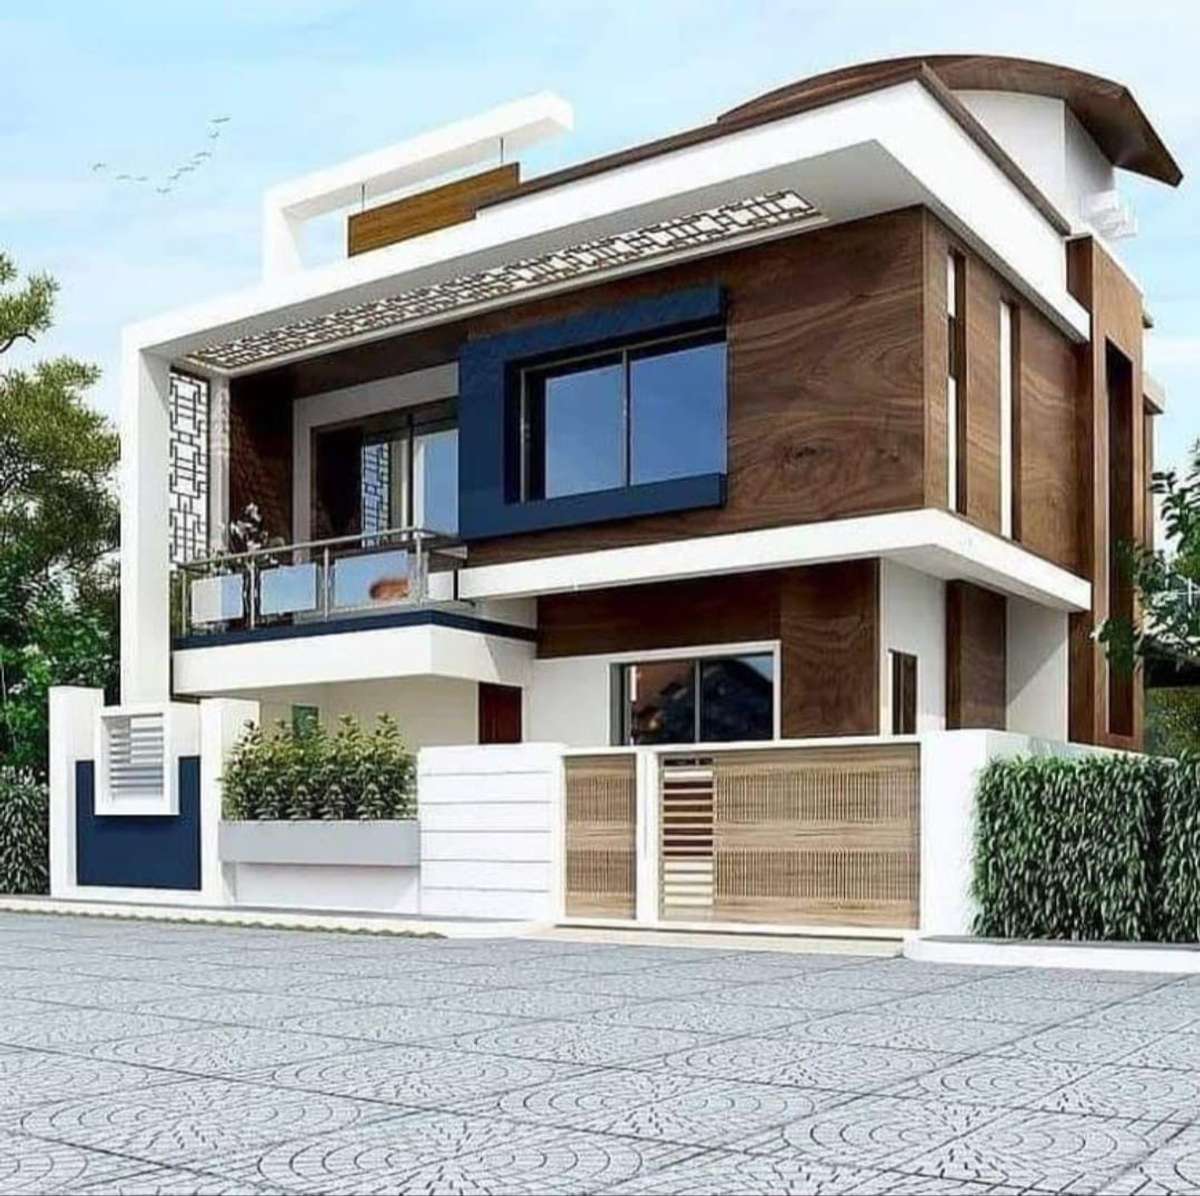 Designs by Contractor sneha leeha builders, Kannur | Kolo